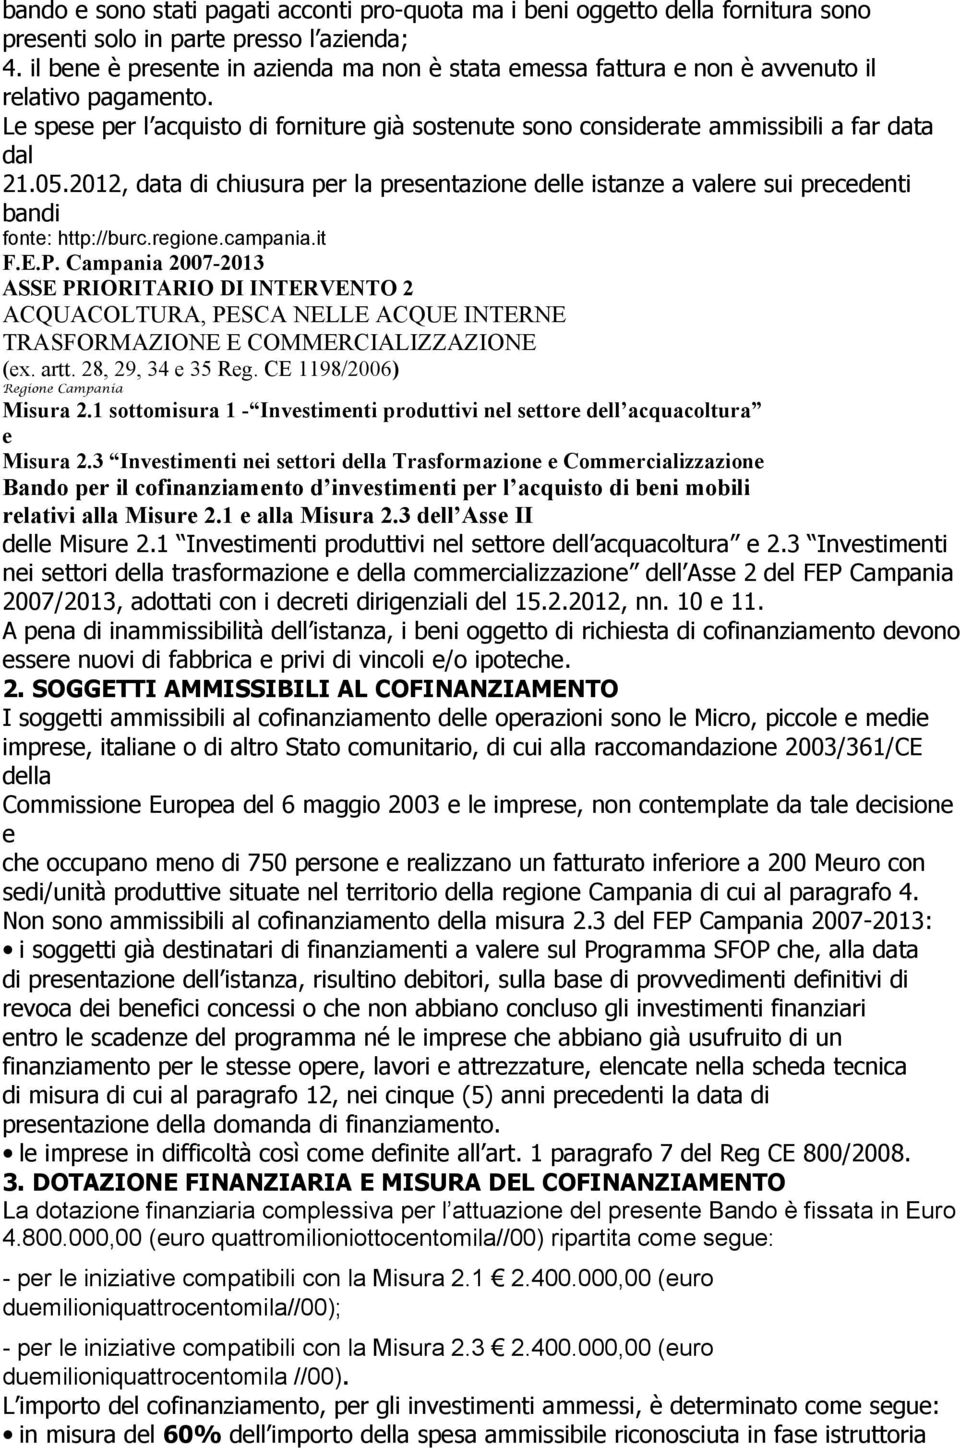 2012, data di chiusura pr la prsntazion dll istanz a valr sui prcdnti bandi font: http://burc.rgion.campania.it (x. artt. 28, 29, 34 35 Rg. CE 1198/2006) Rgion Campania Misura 2.